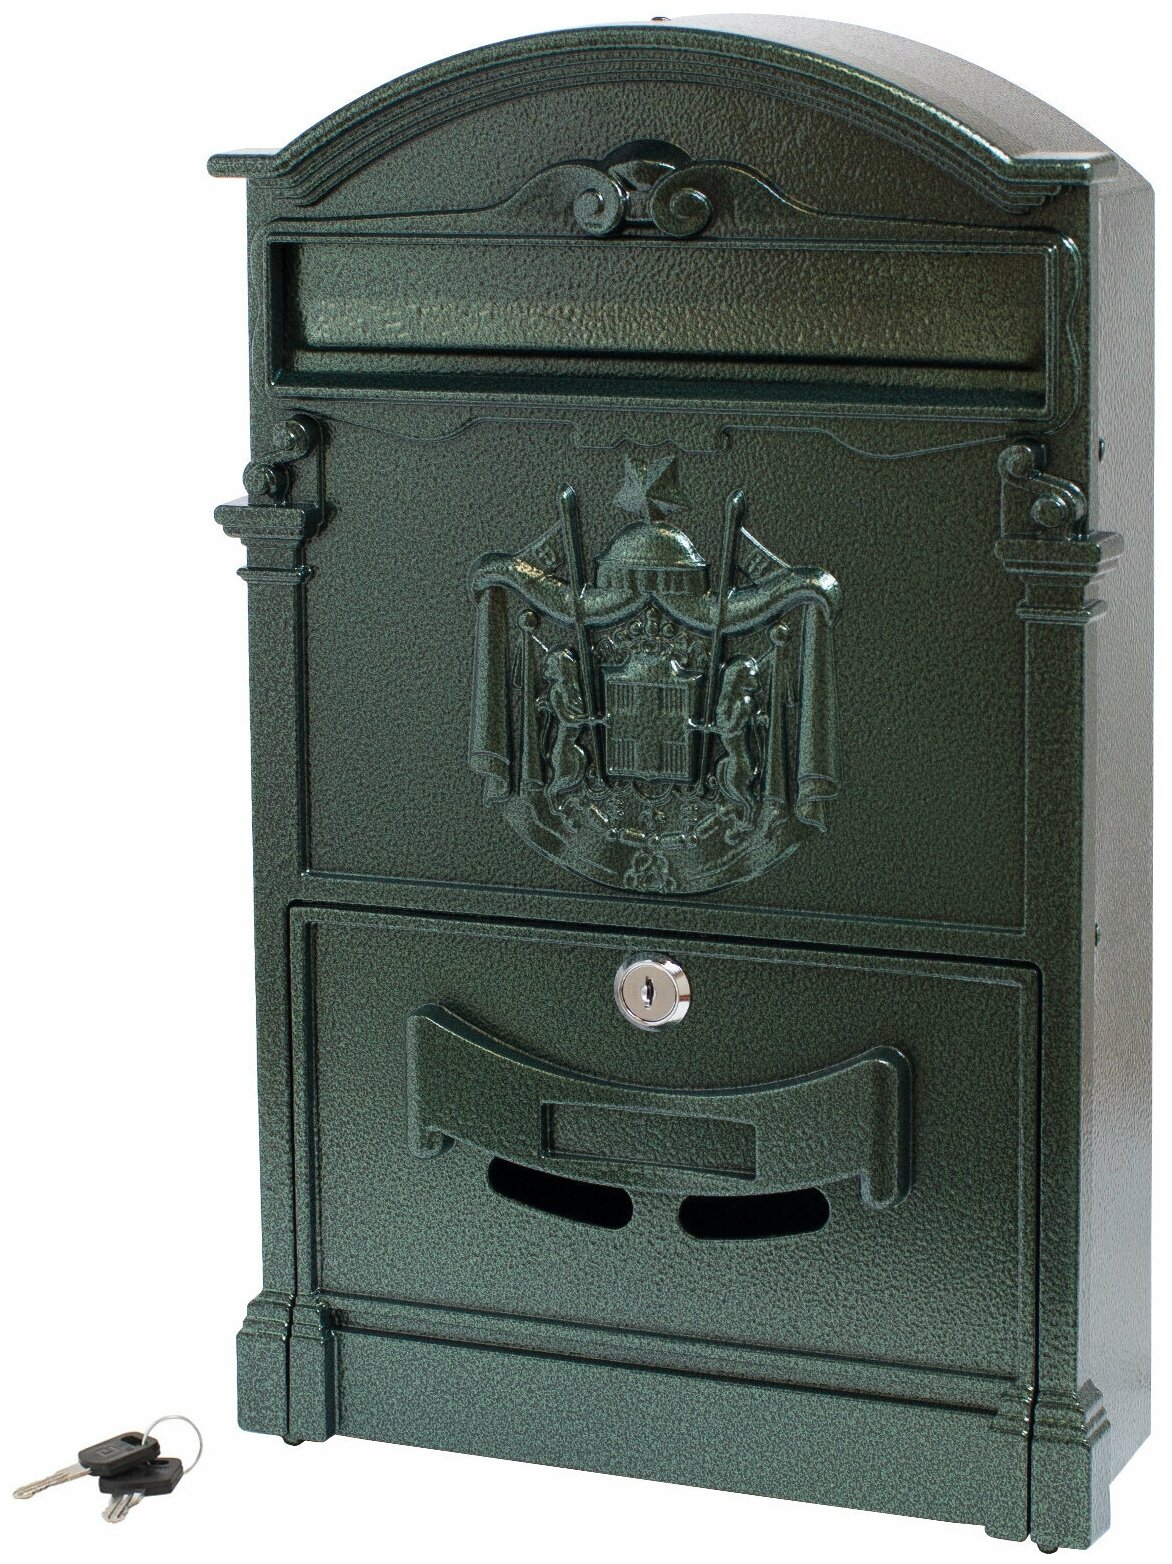 Почтовый ящик с замком уличный металлический для дома аллюр №4010 тёмно-зелёный